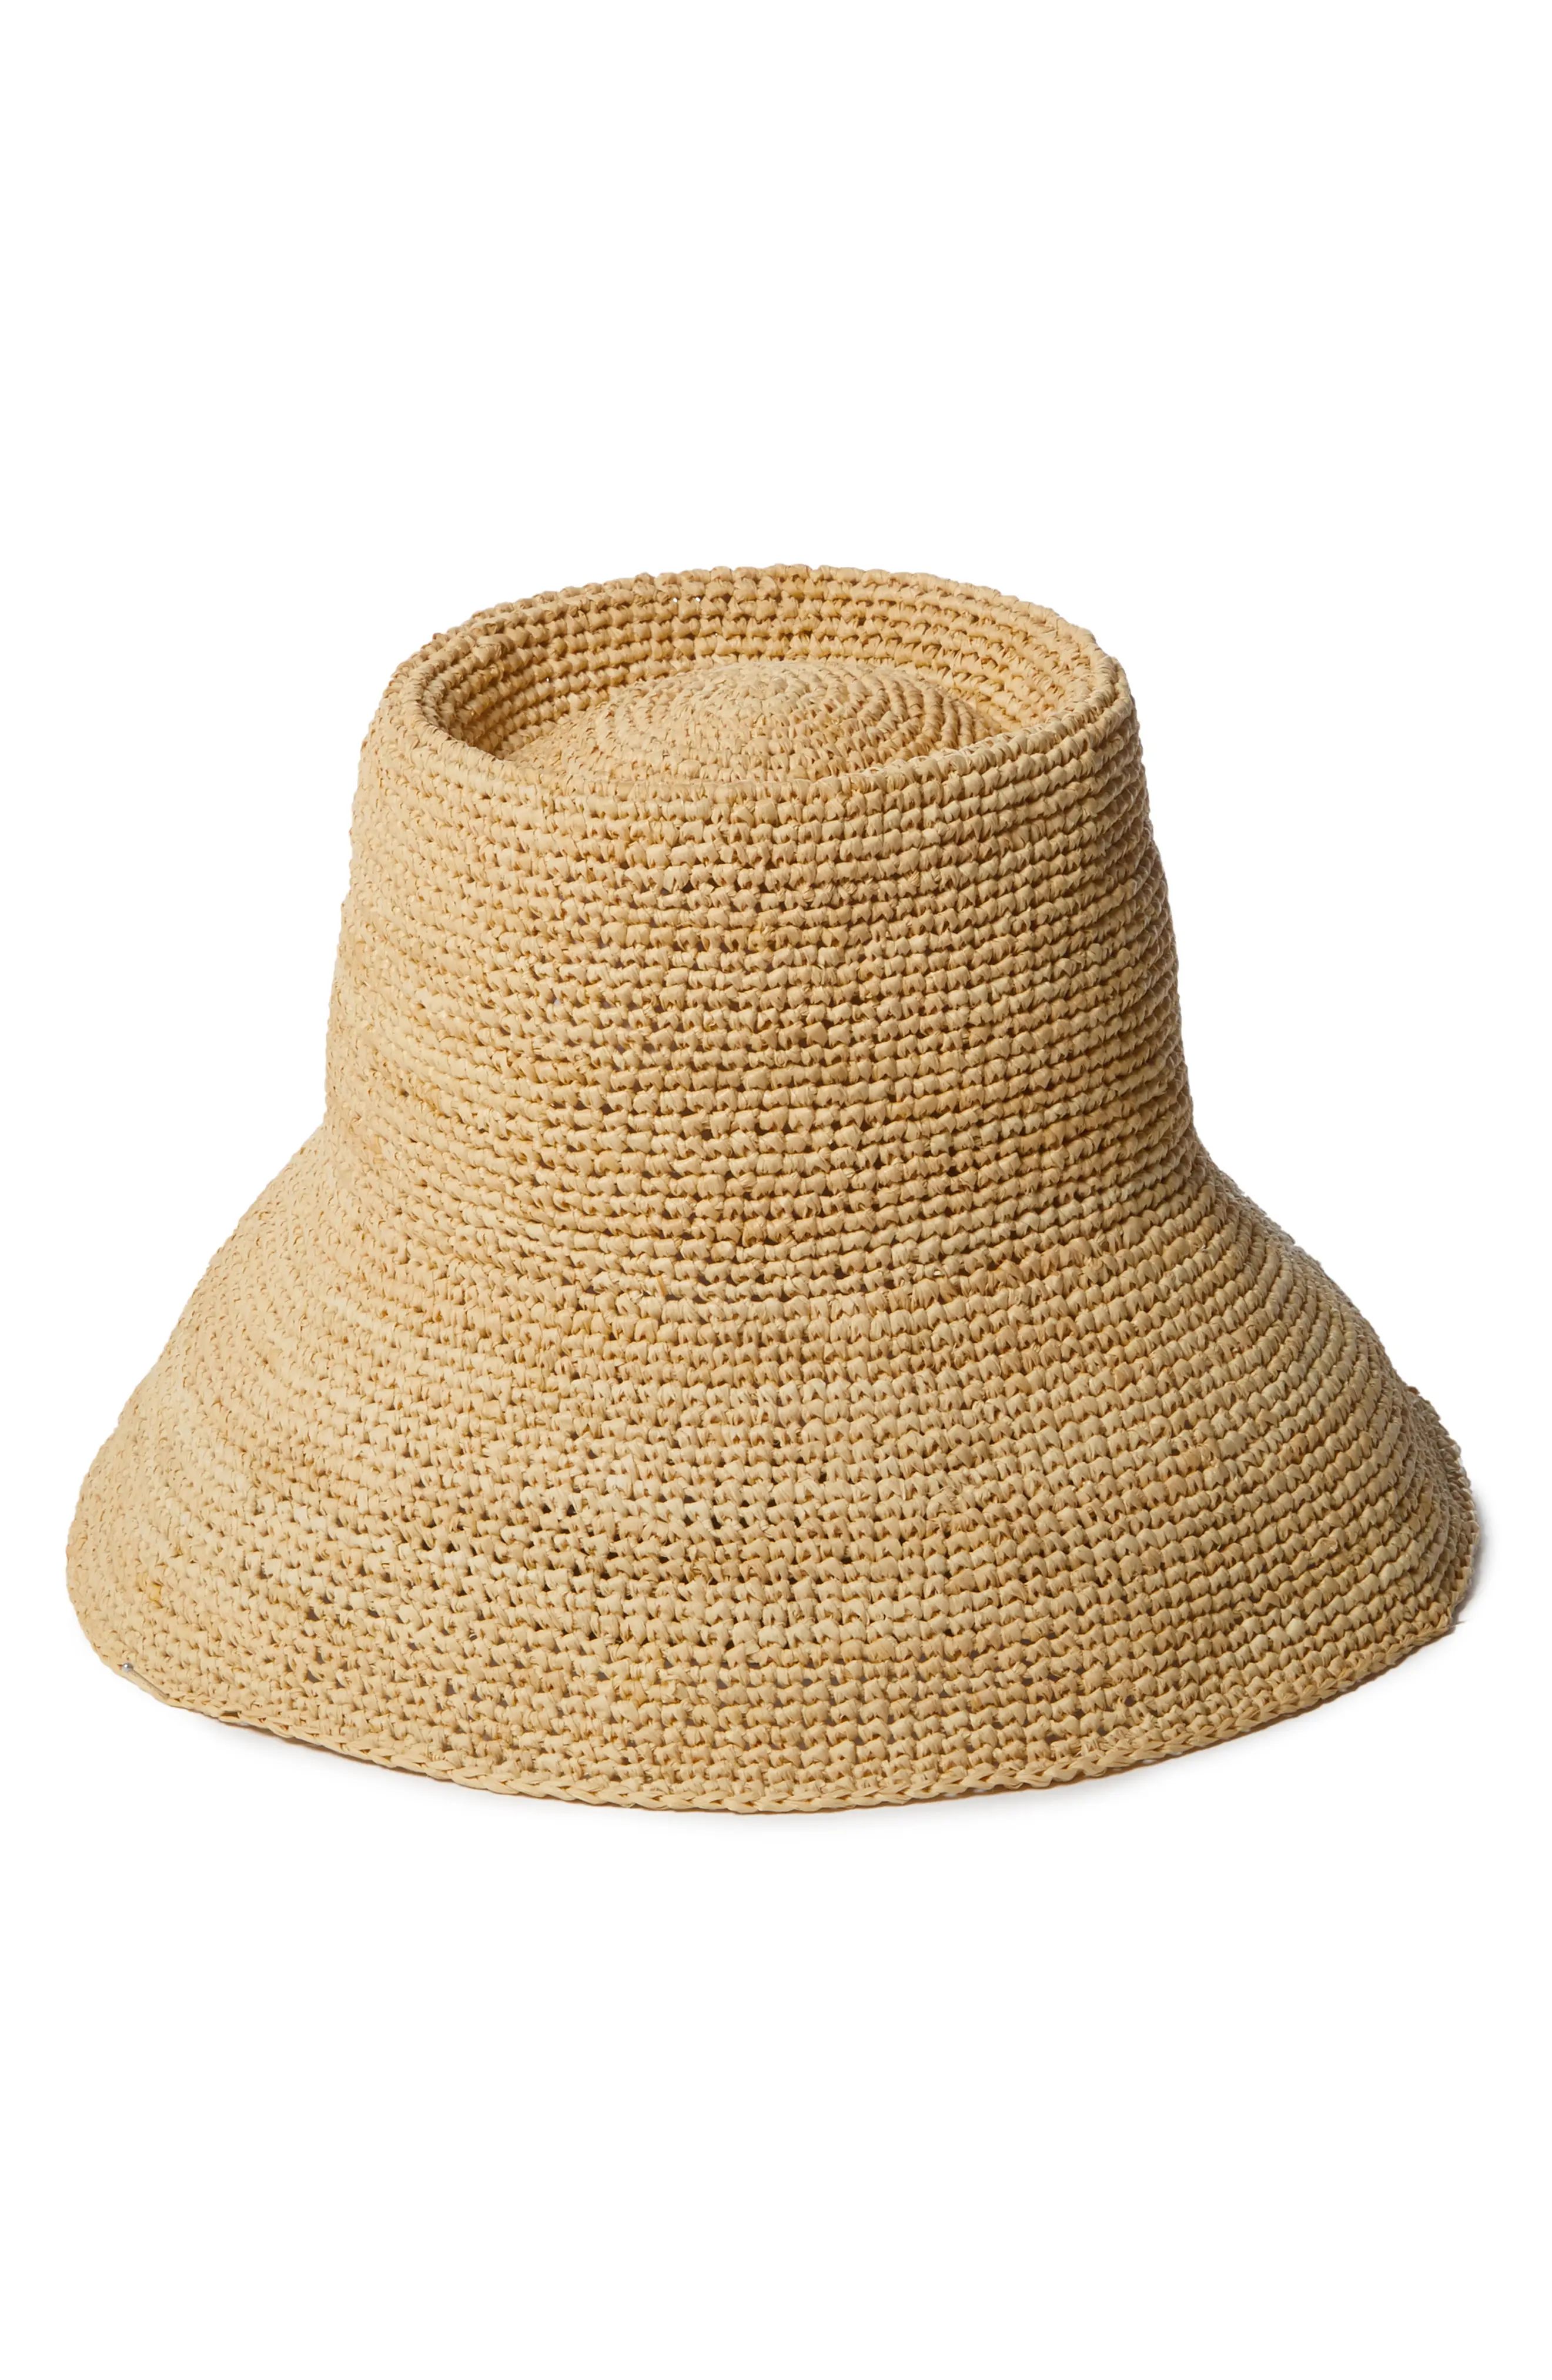 Janessa Leone Felix Raffia Bucket Hat in Natural at Nordstrom, Size Medium | Nordstrom